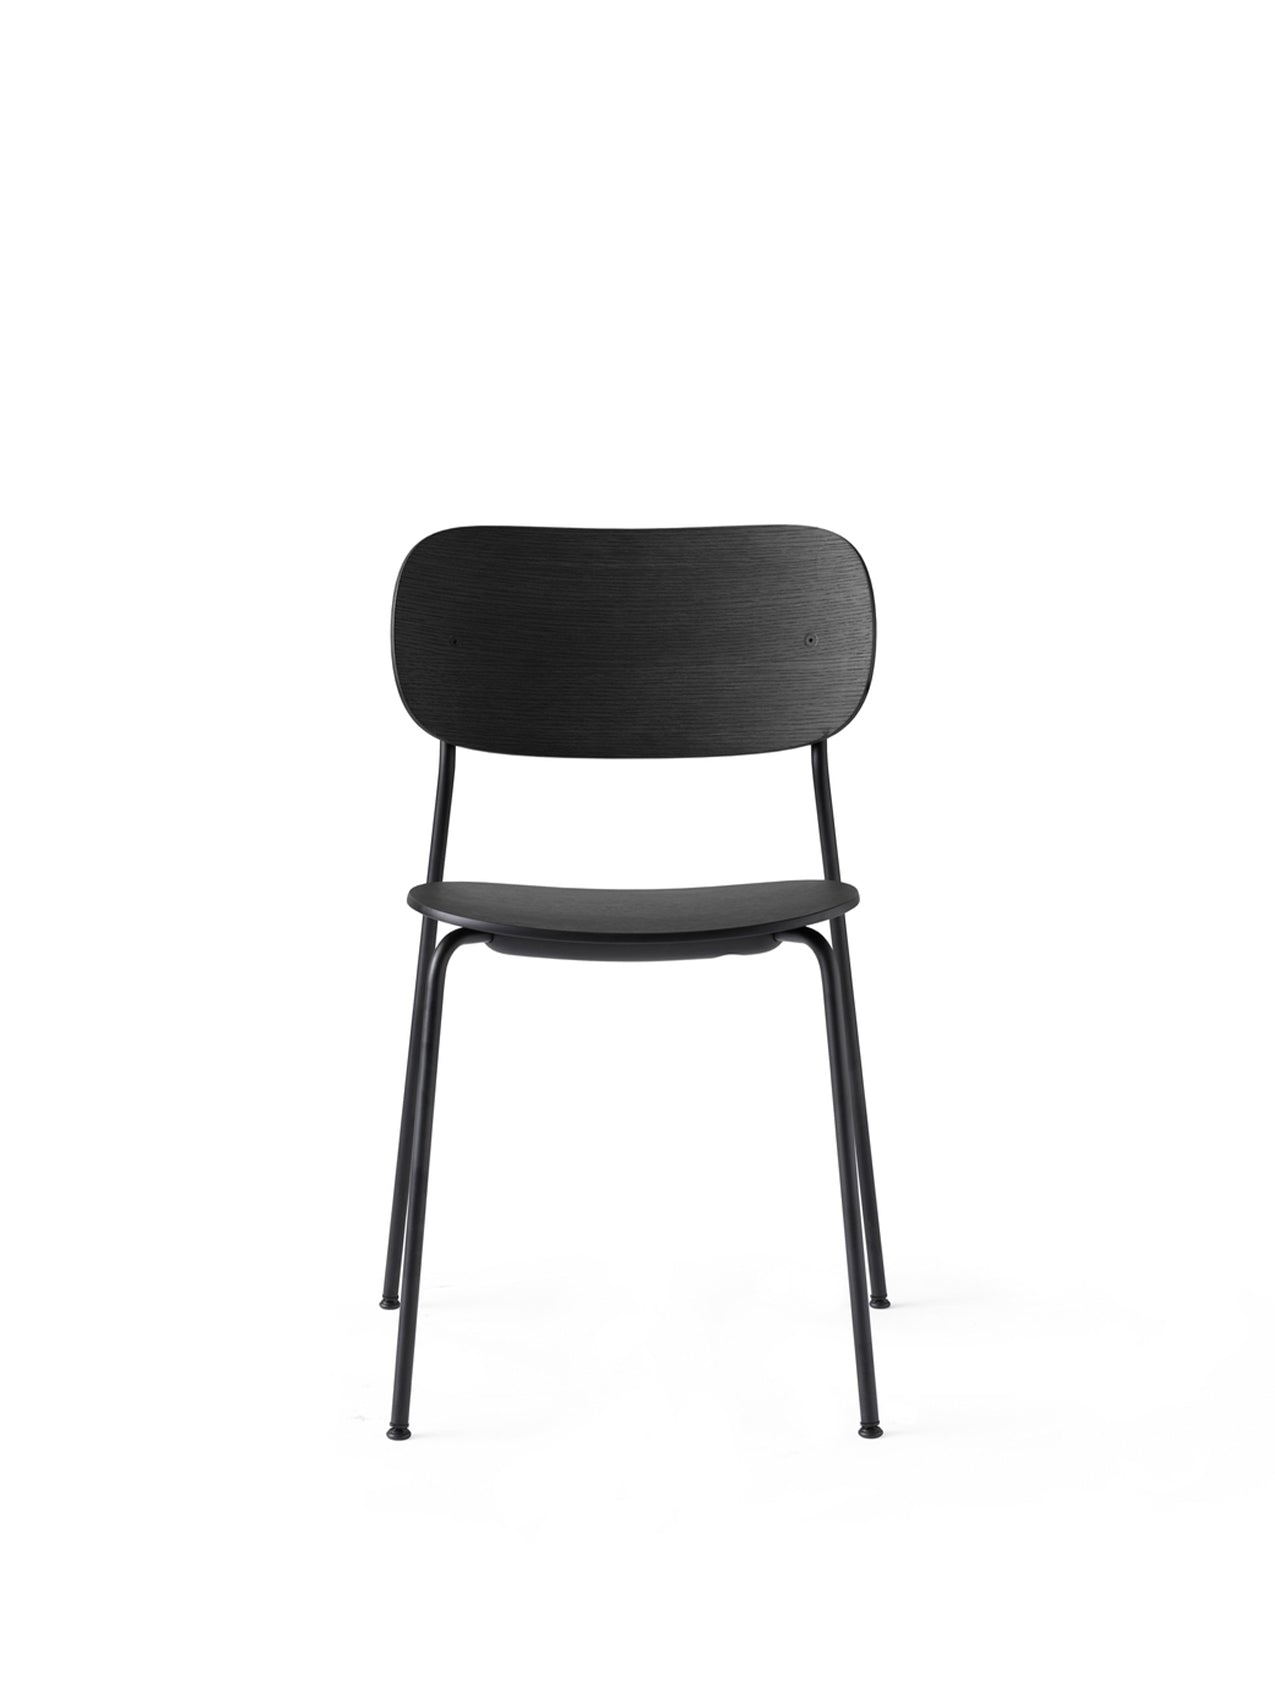 Co Dining Chair, Black steel, Veneer